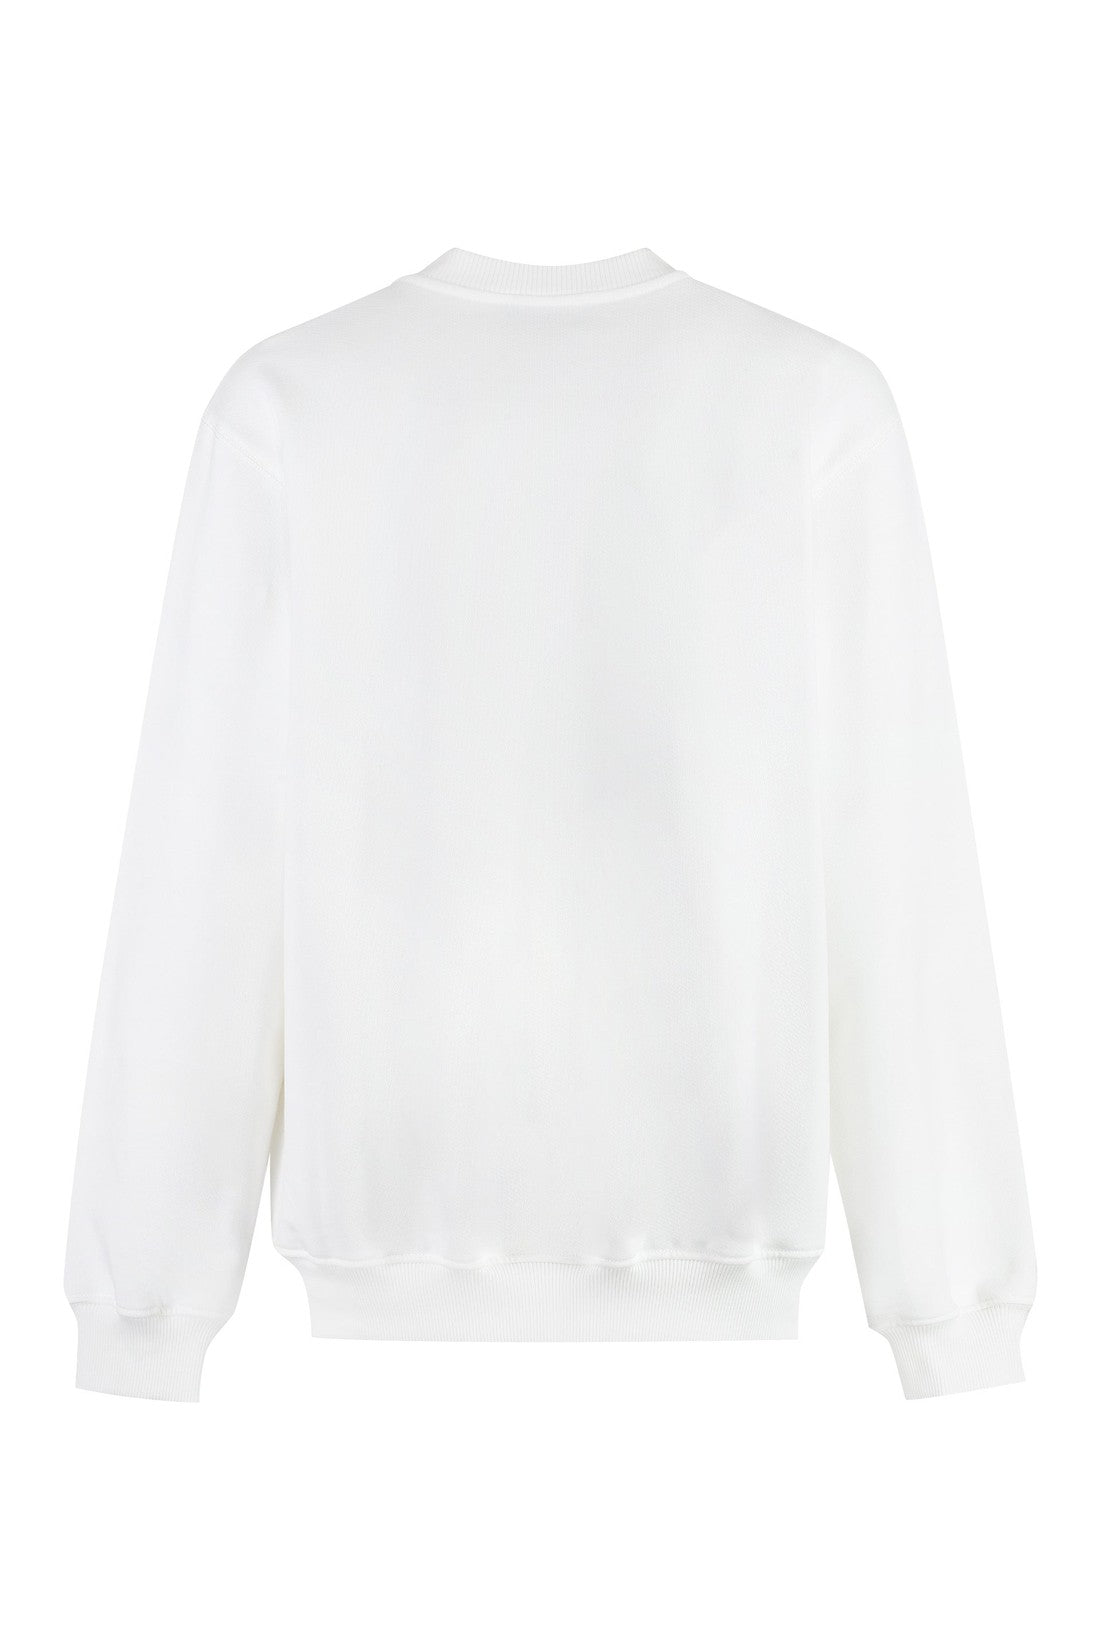 Casablanca-OUTLET-SALE-Printed cotton sweatshirt-ARCHIVIST